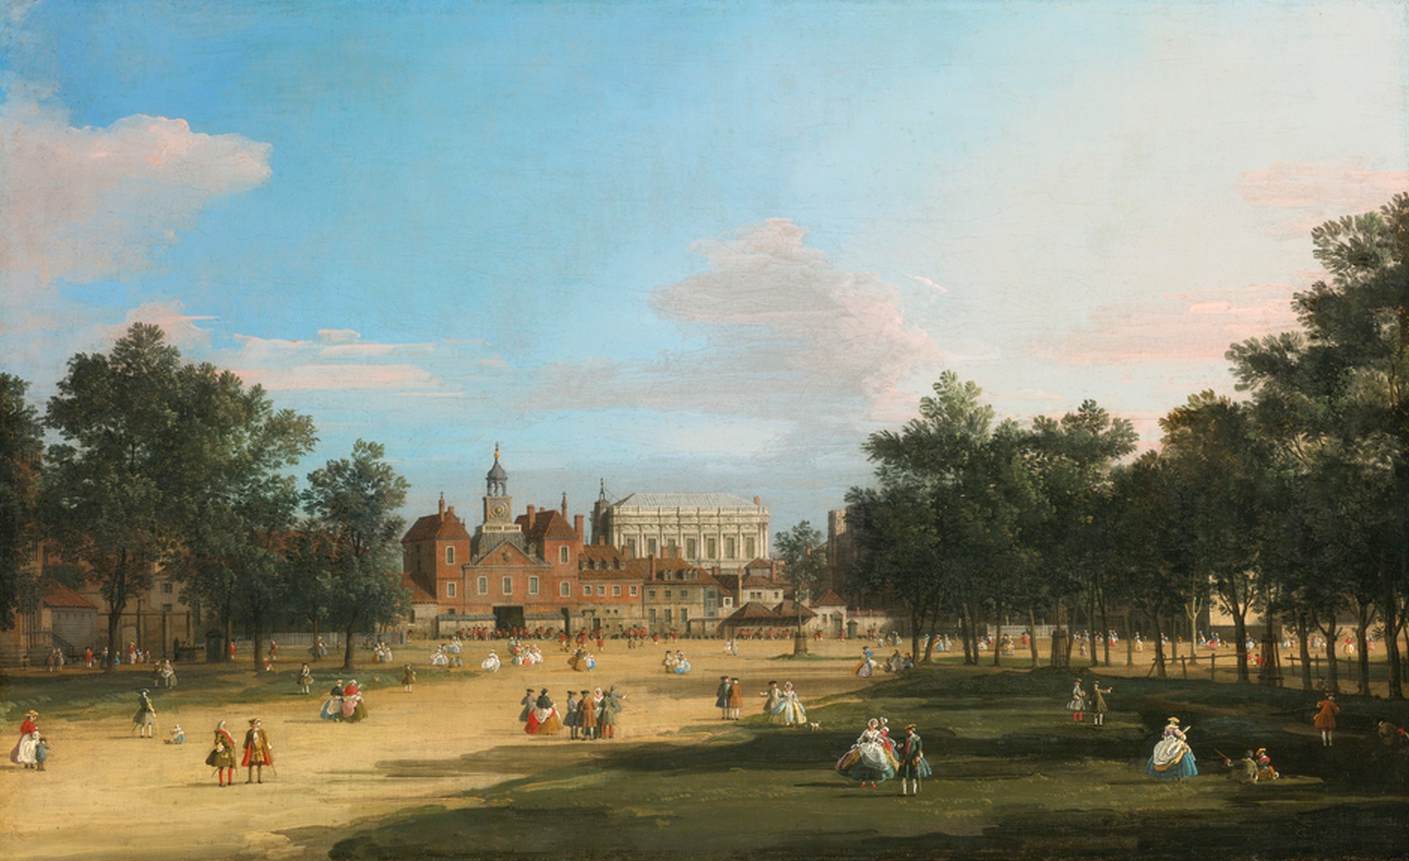 Vista dos Old Horse Guards e Banquet Hall